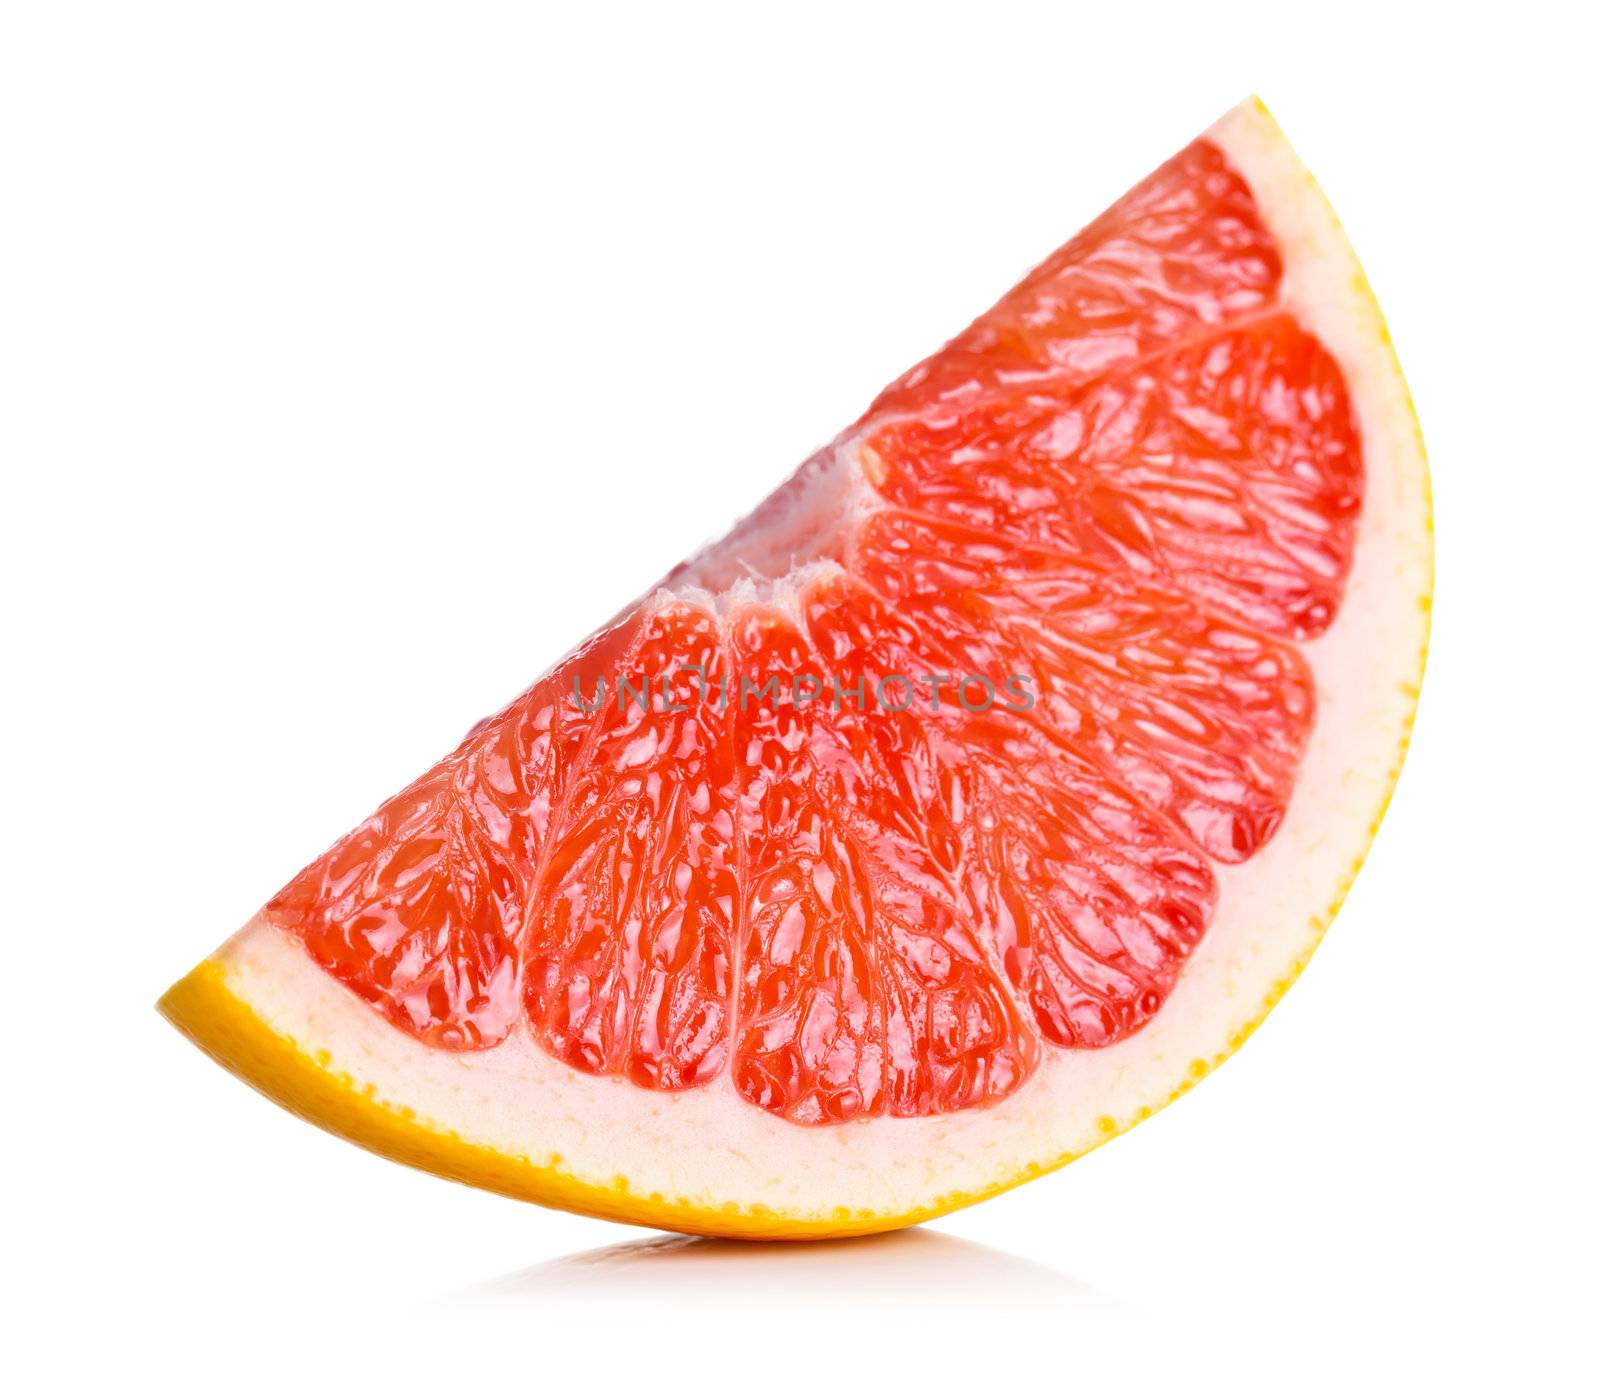 Grapefruit Slice by bozena_fulawka